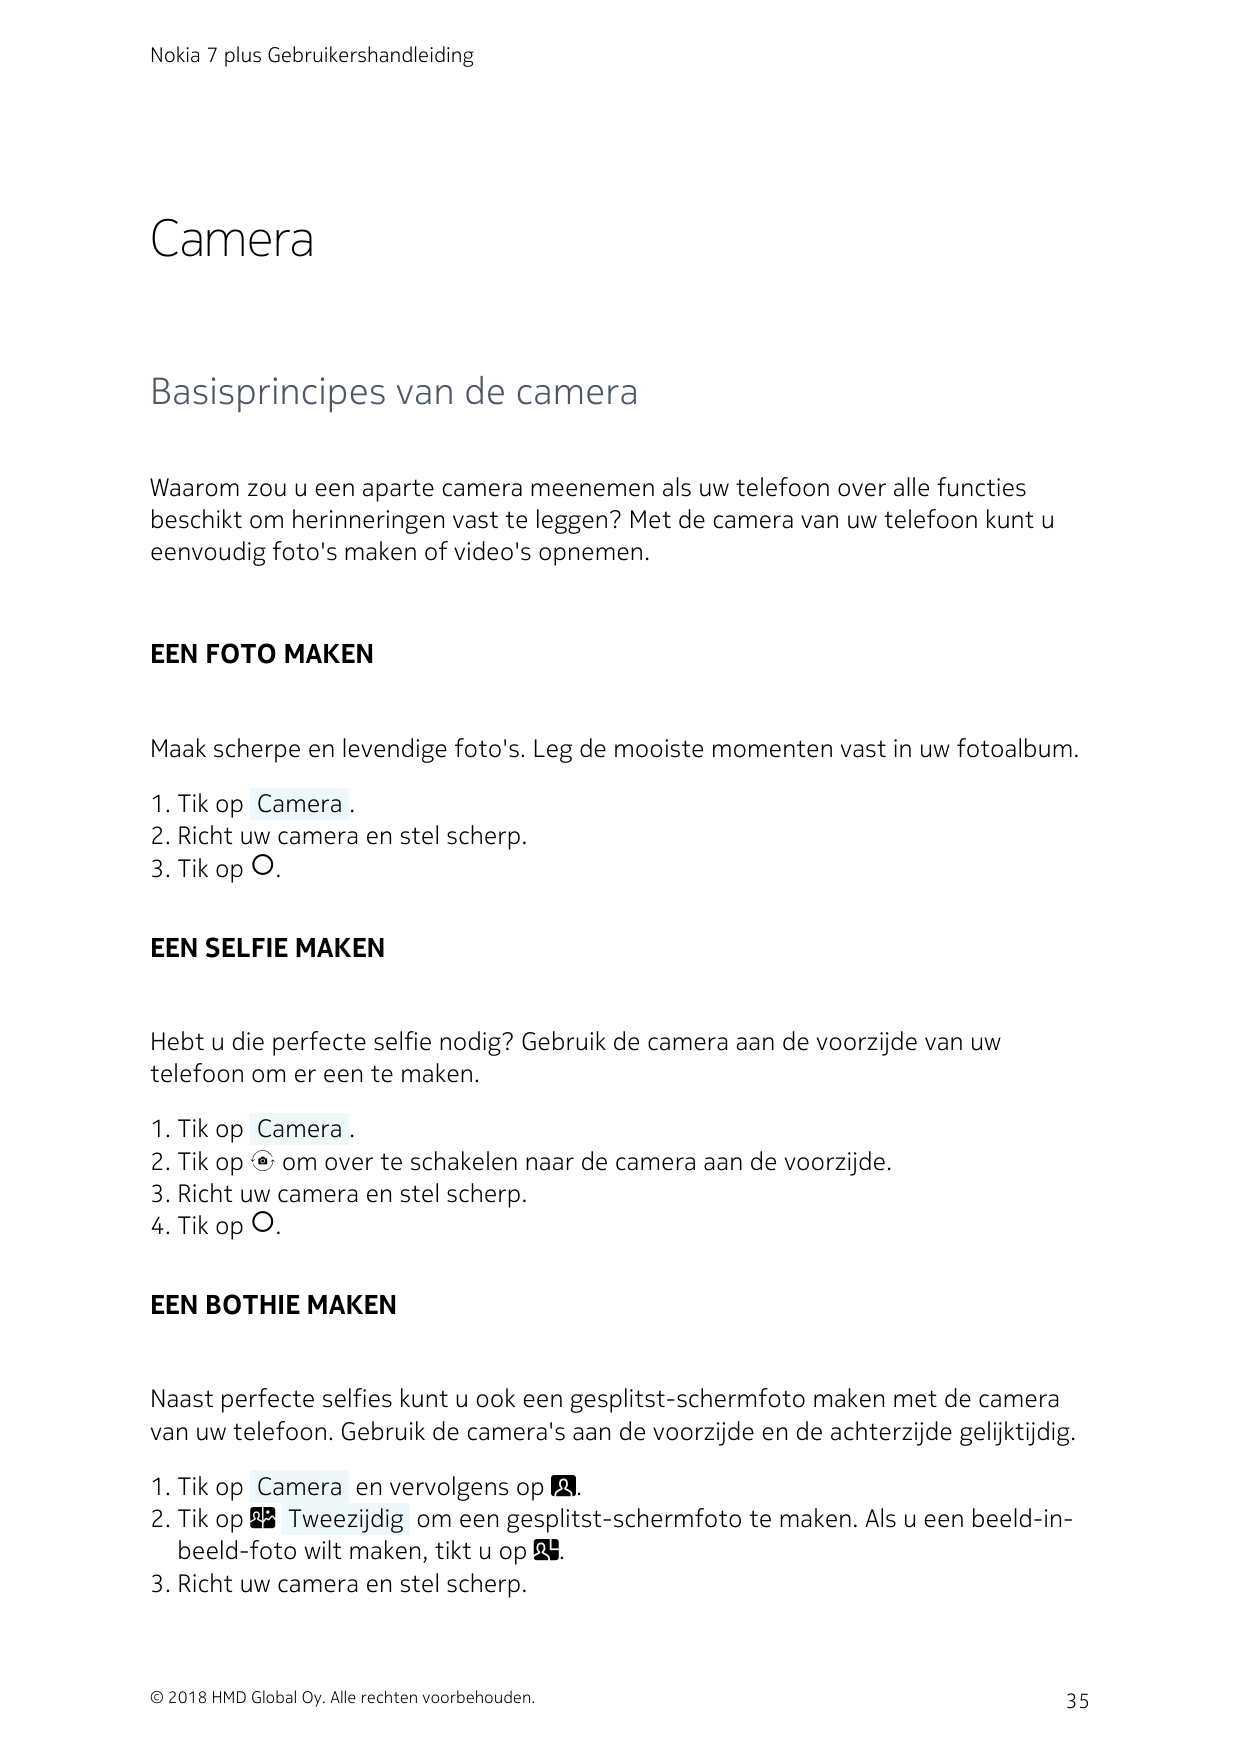 Nokia 7 plus GebruikershandleidingCameraBasisprincipes van de cameraWaarom zou u een aparte camera meenemen als uw telefoon over